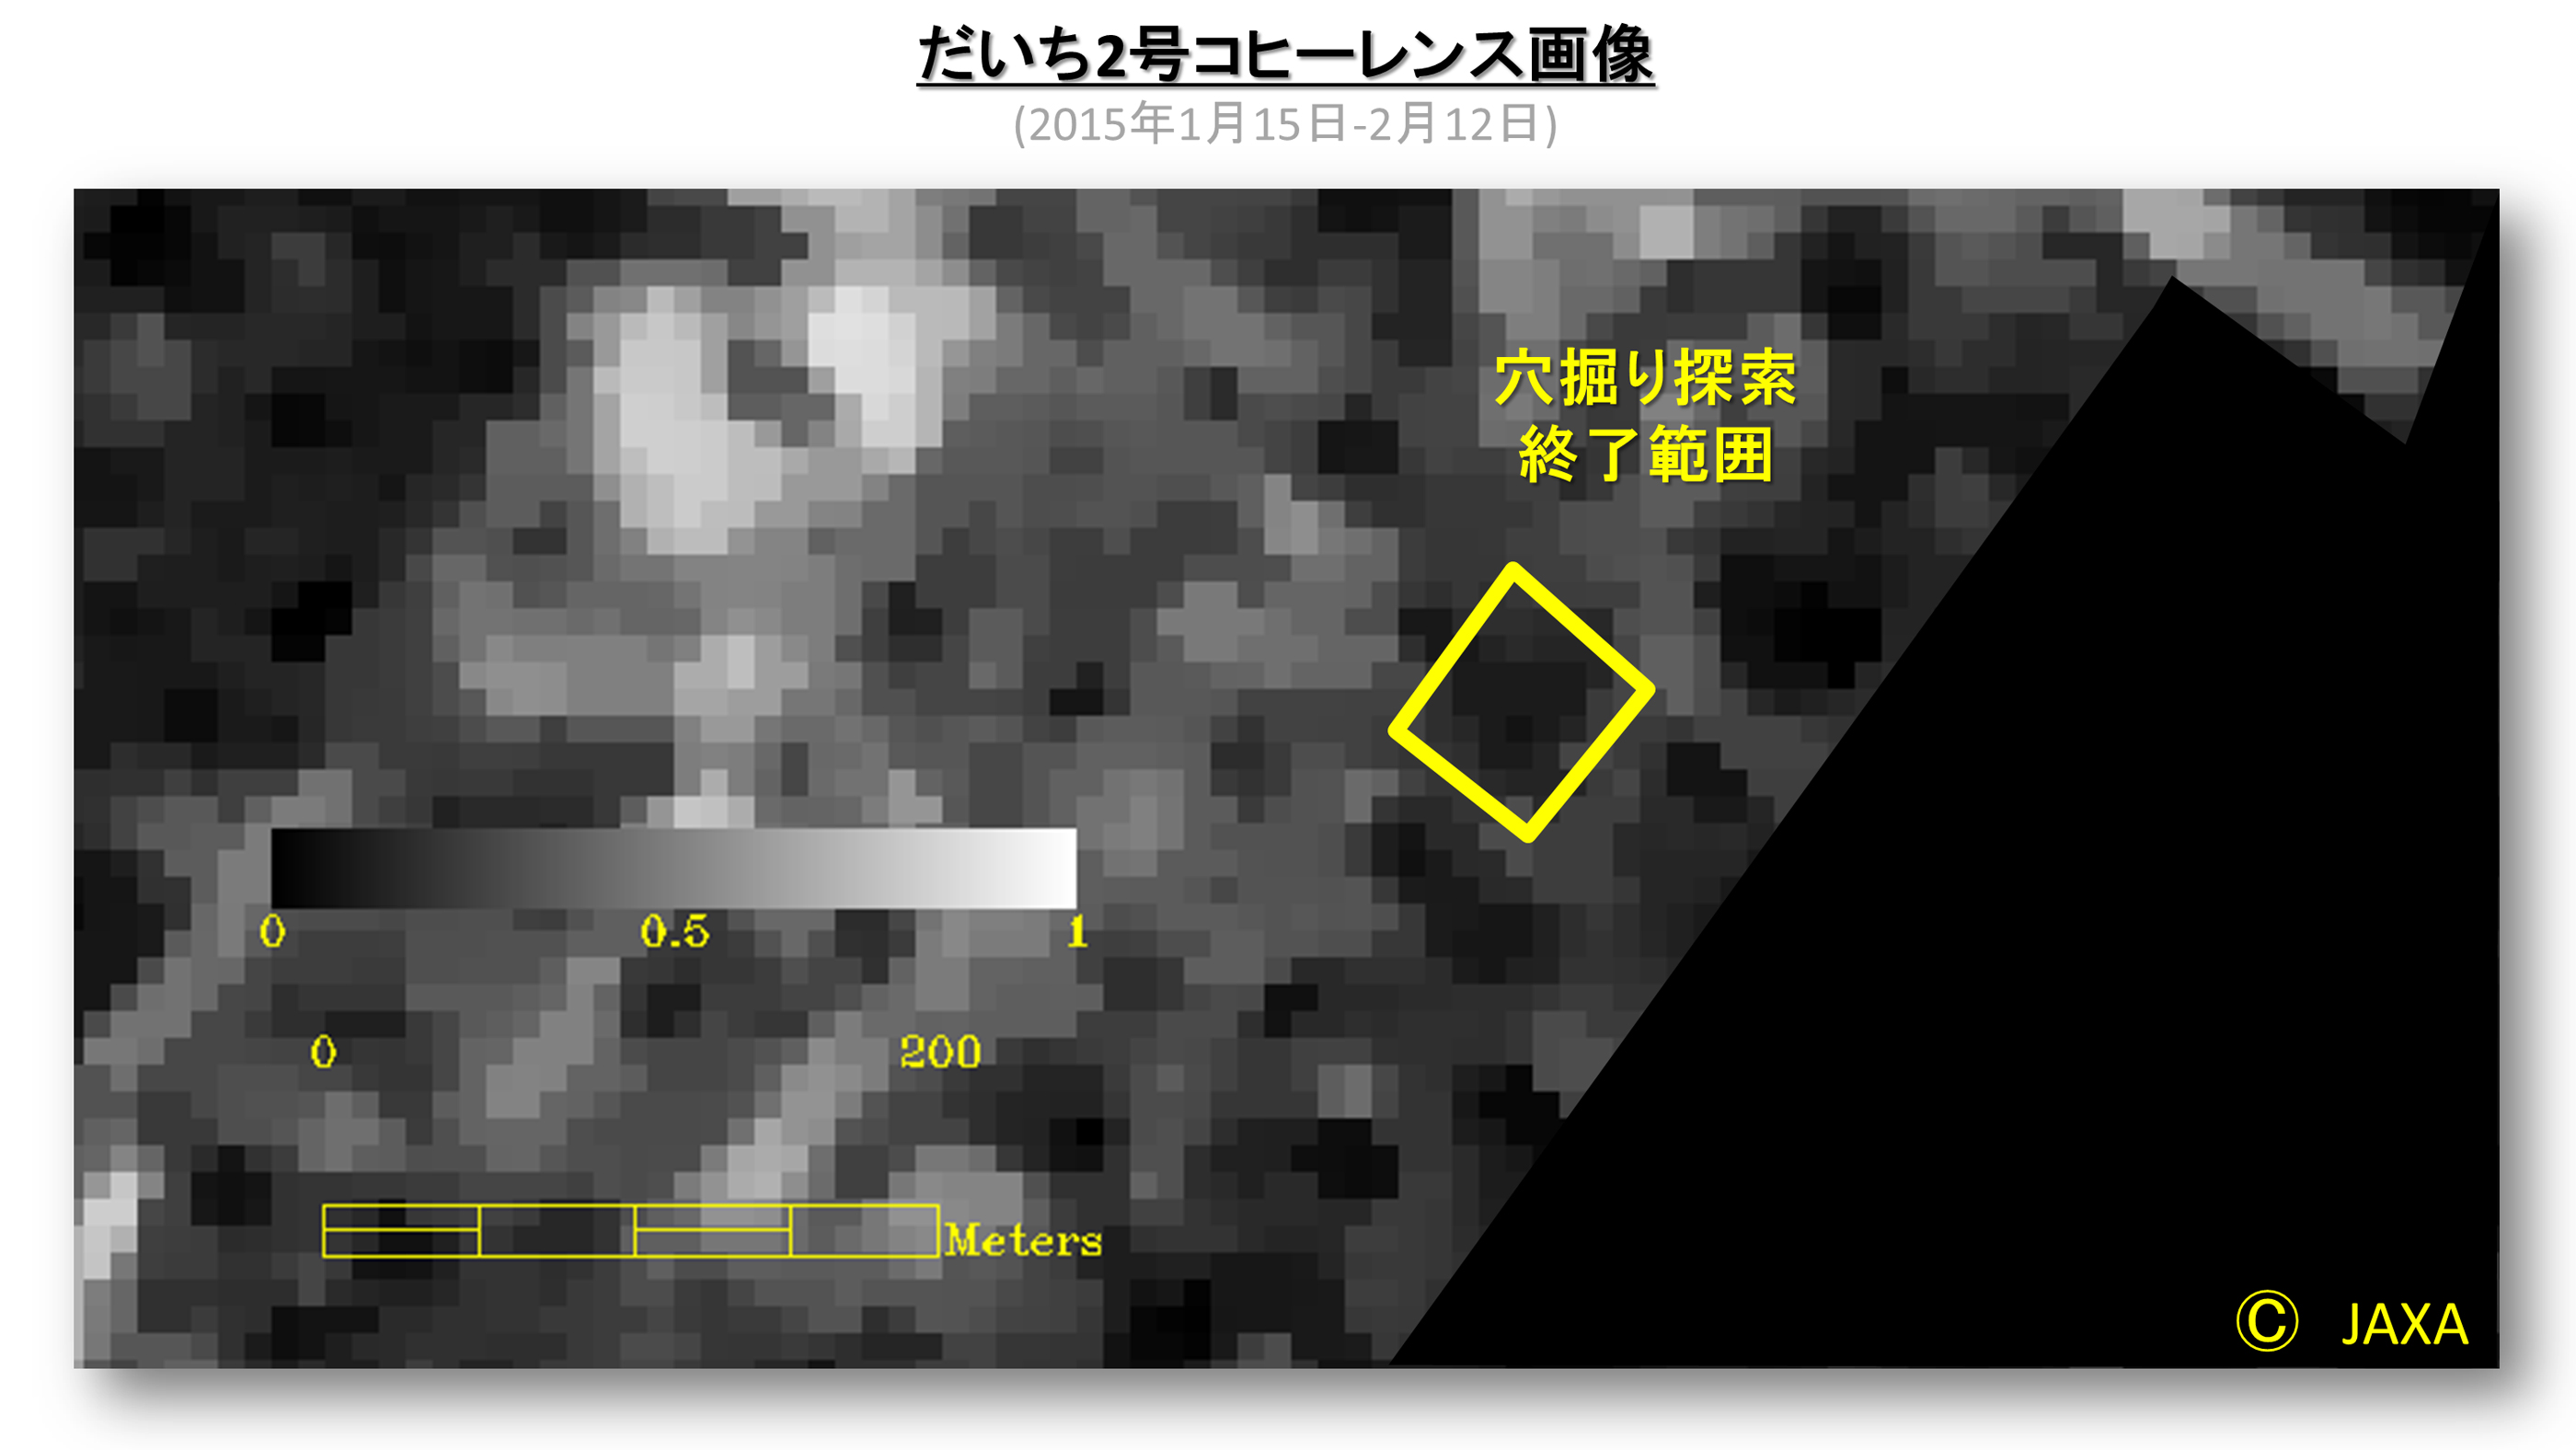 図3: 2015年1月15日と2月12日のだいち2号搭載センサPALSAR-2観測画像から得られたコヒーレンス画像 (異なる時期に同じ観測モードで観測された2枚の画像を0～1の類似度で示したもので、2枚の画像の類似度が全くない場合は0、全く同じ場合は1となる)